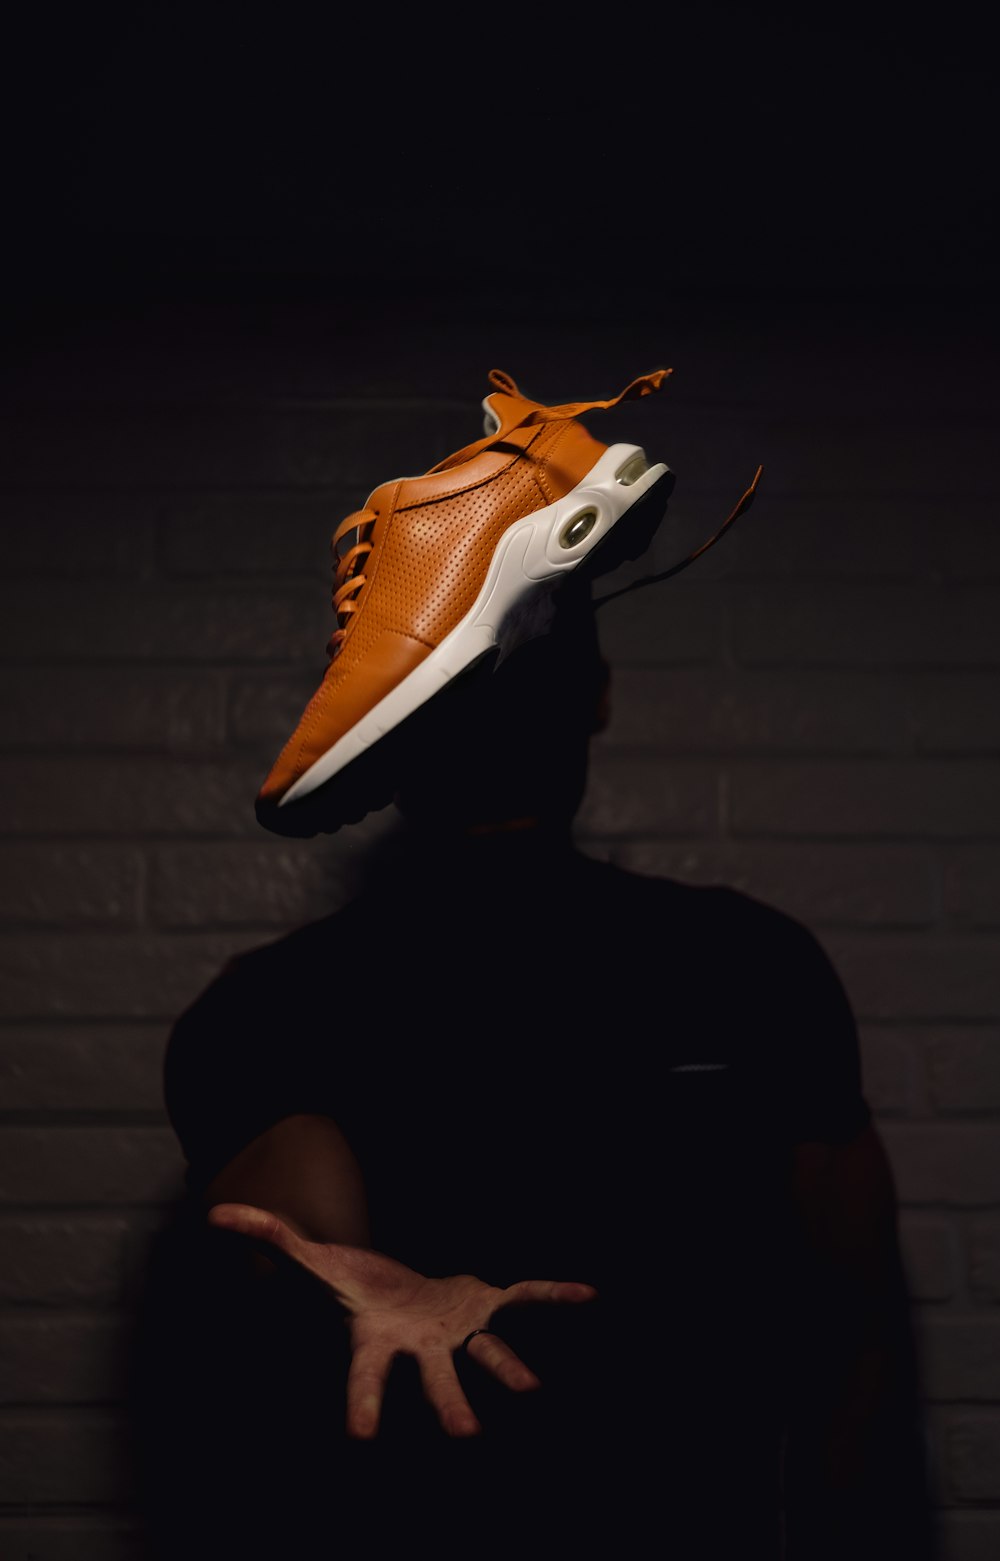 Personne portant des chaussures de basket-ball Nike orange et blanches